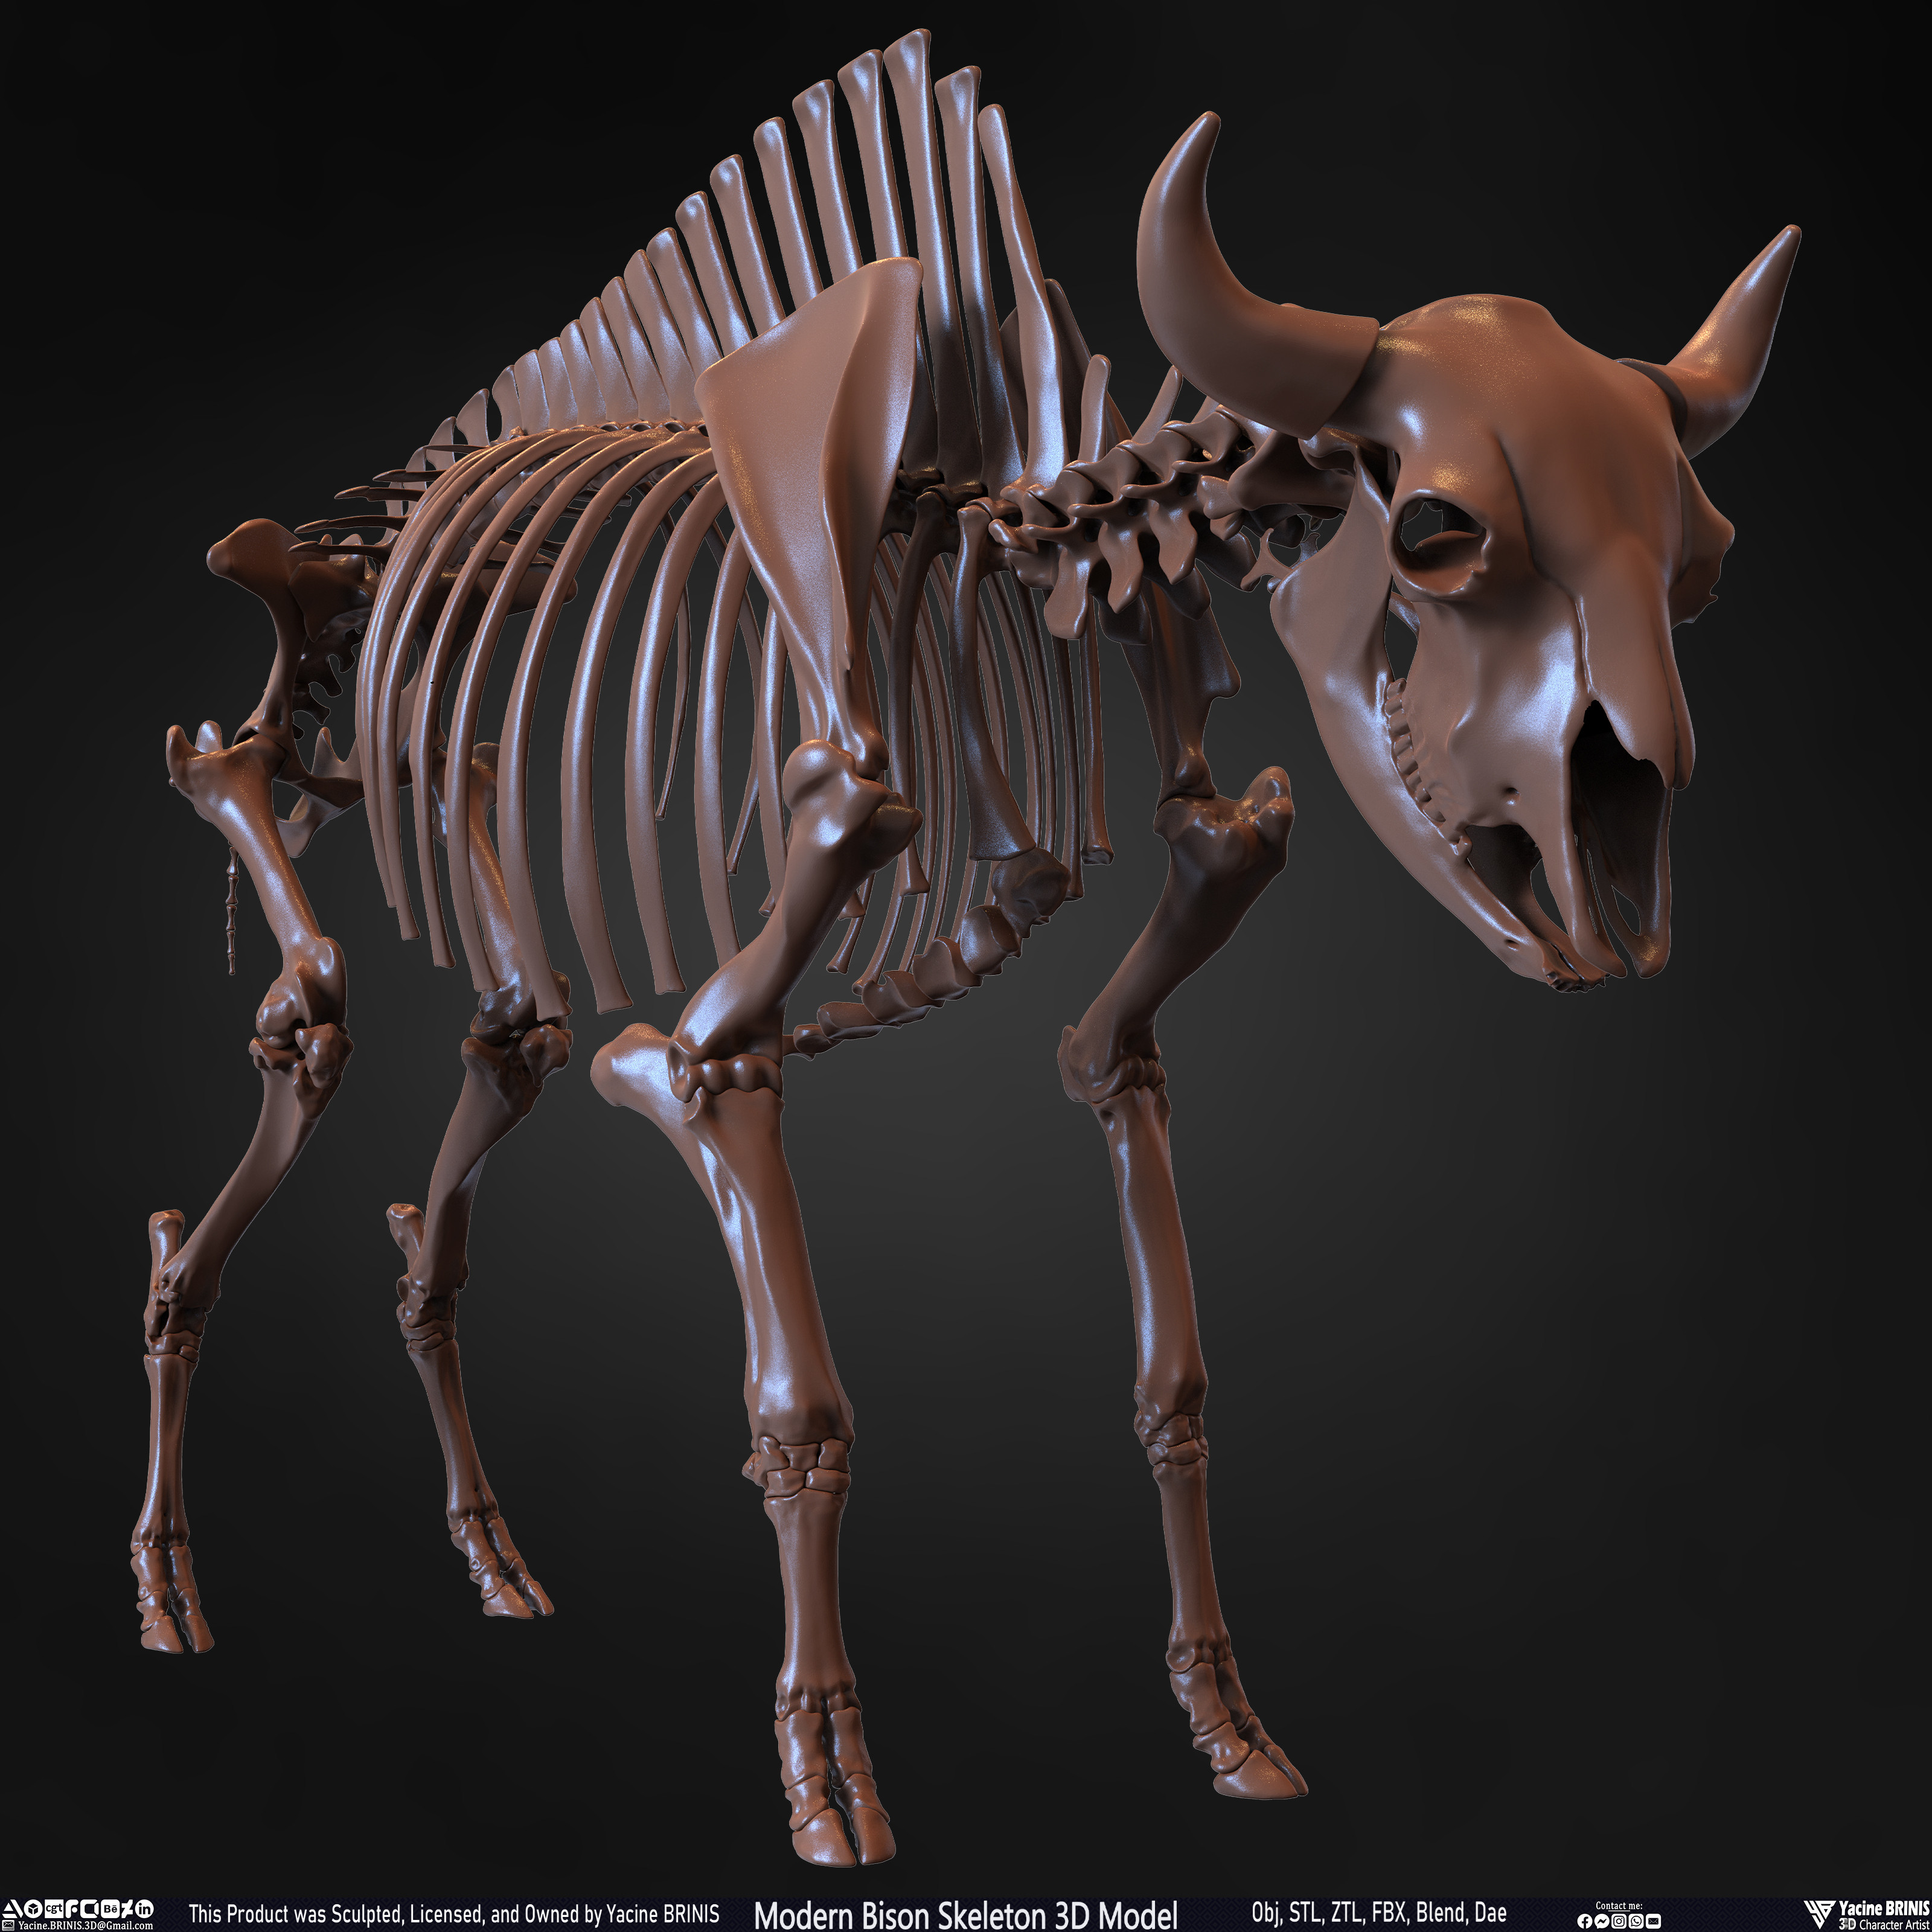 Modern Bison Skeleton 3D Model Sculpted by Yacine BRINIS Set 005